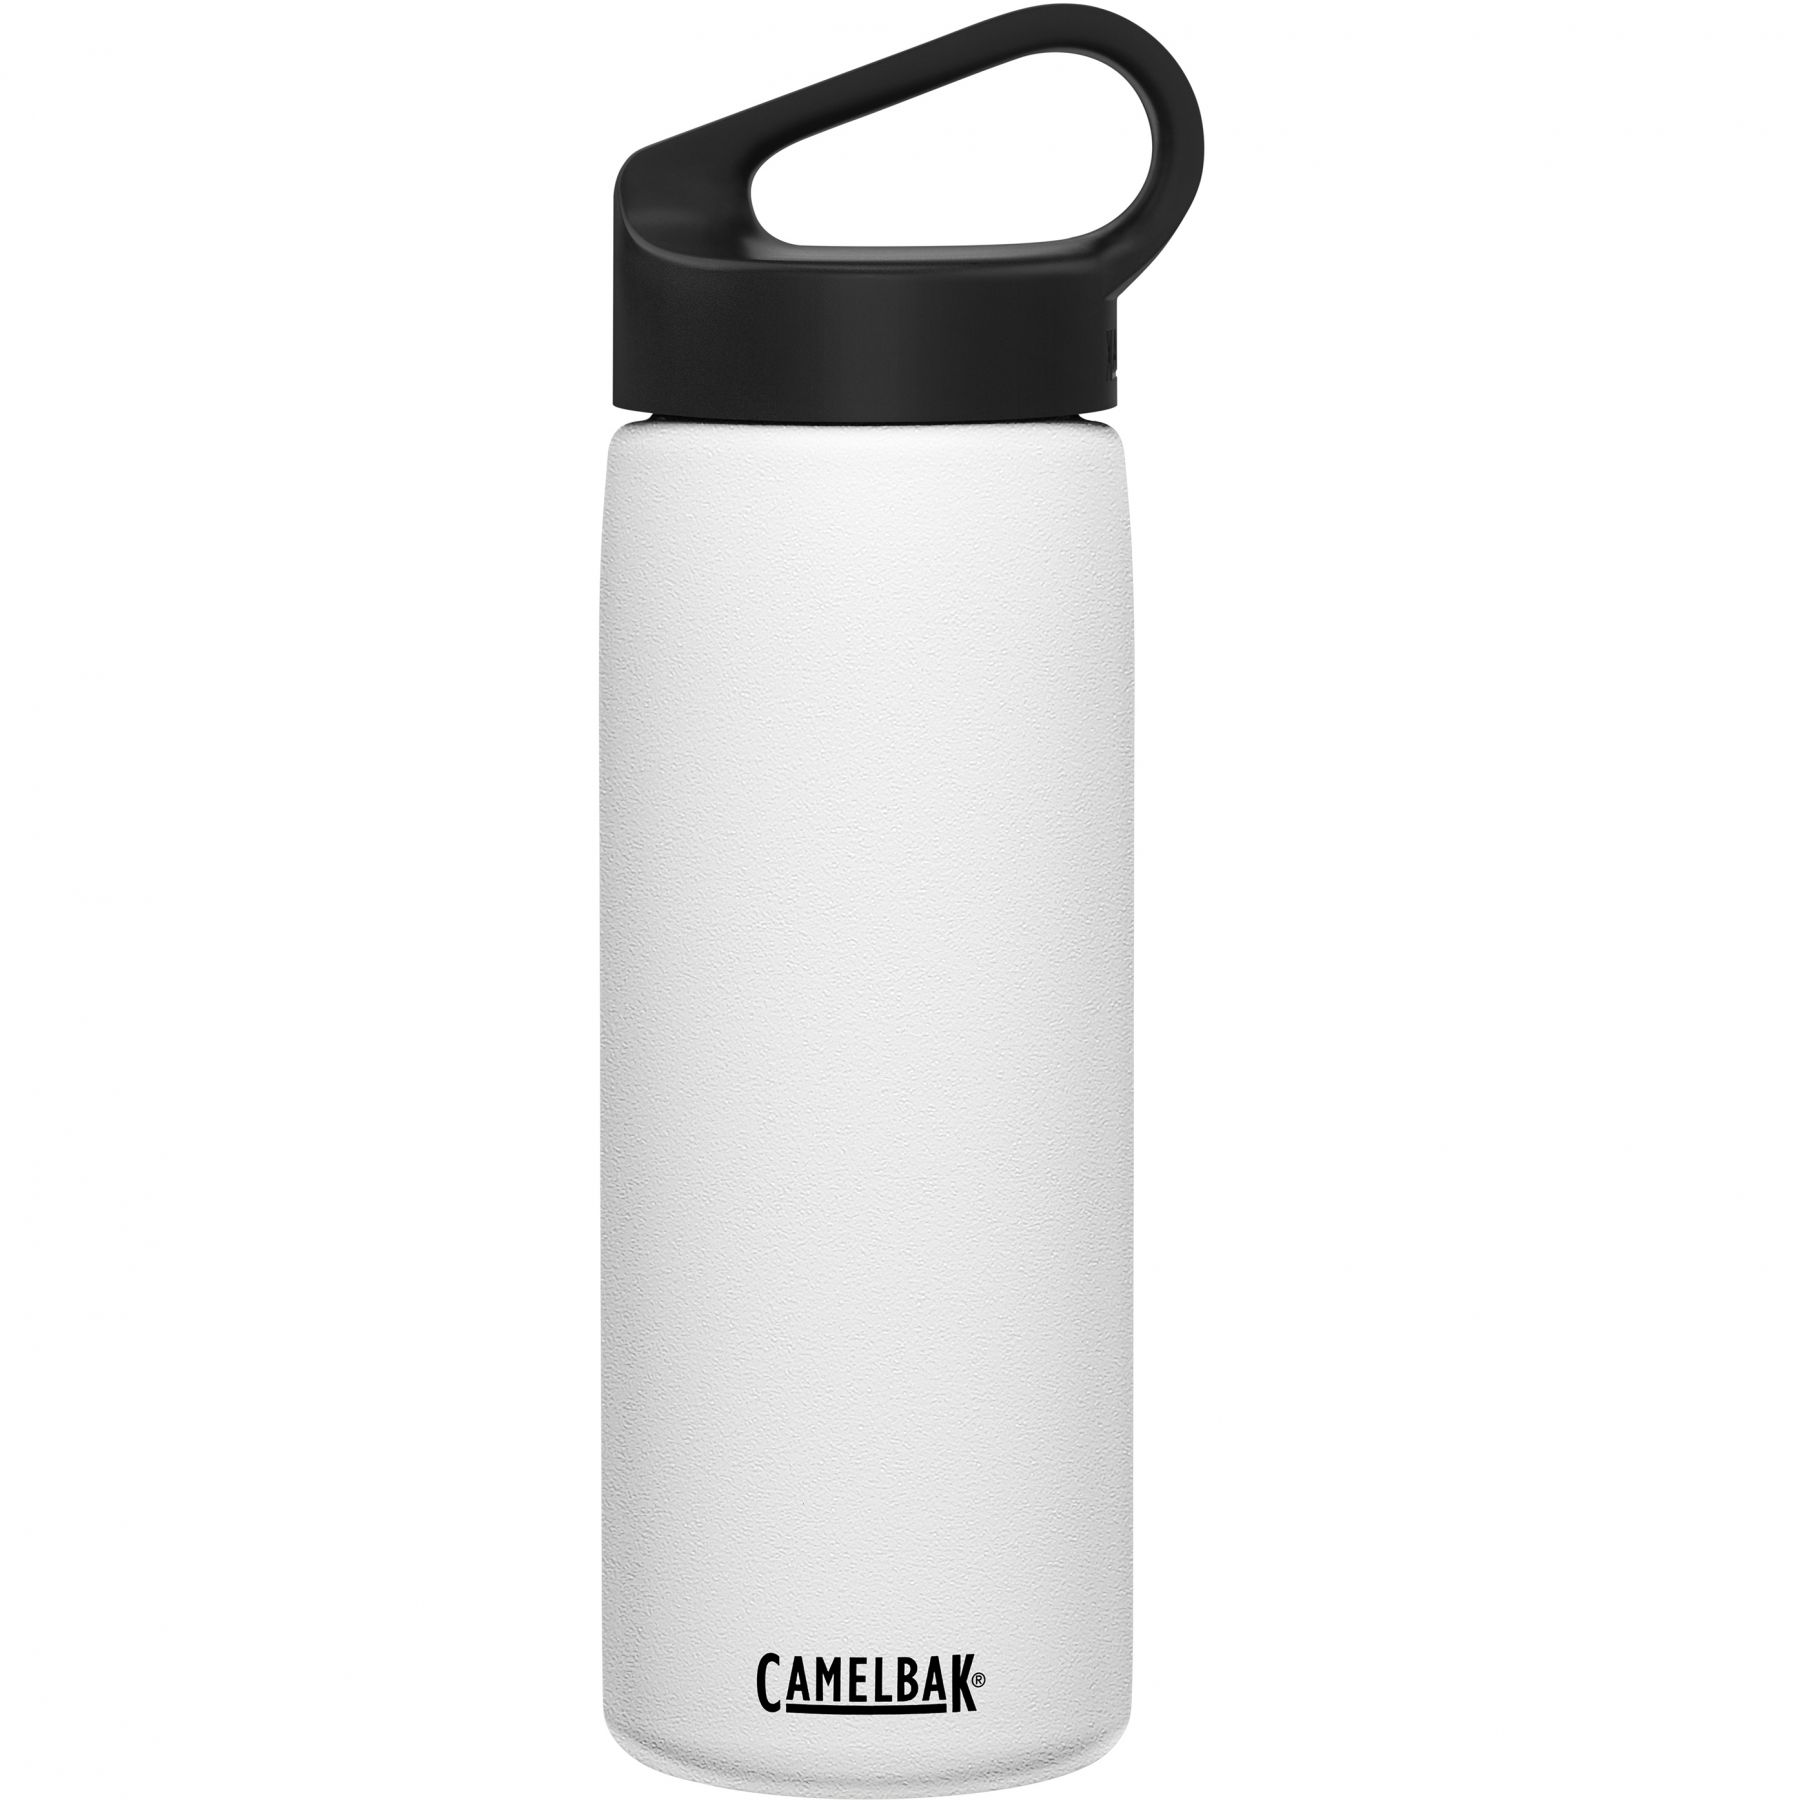 Brug CamelBak Carry Cap, drikkedunk, 0,6L, hvid til en forbedret oplevelse